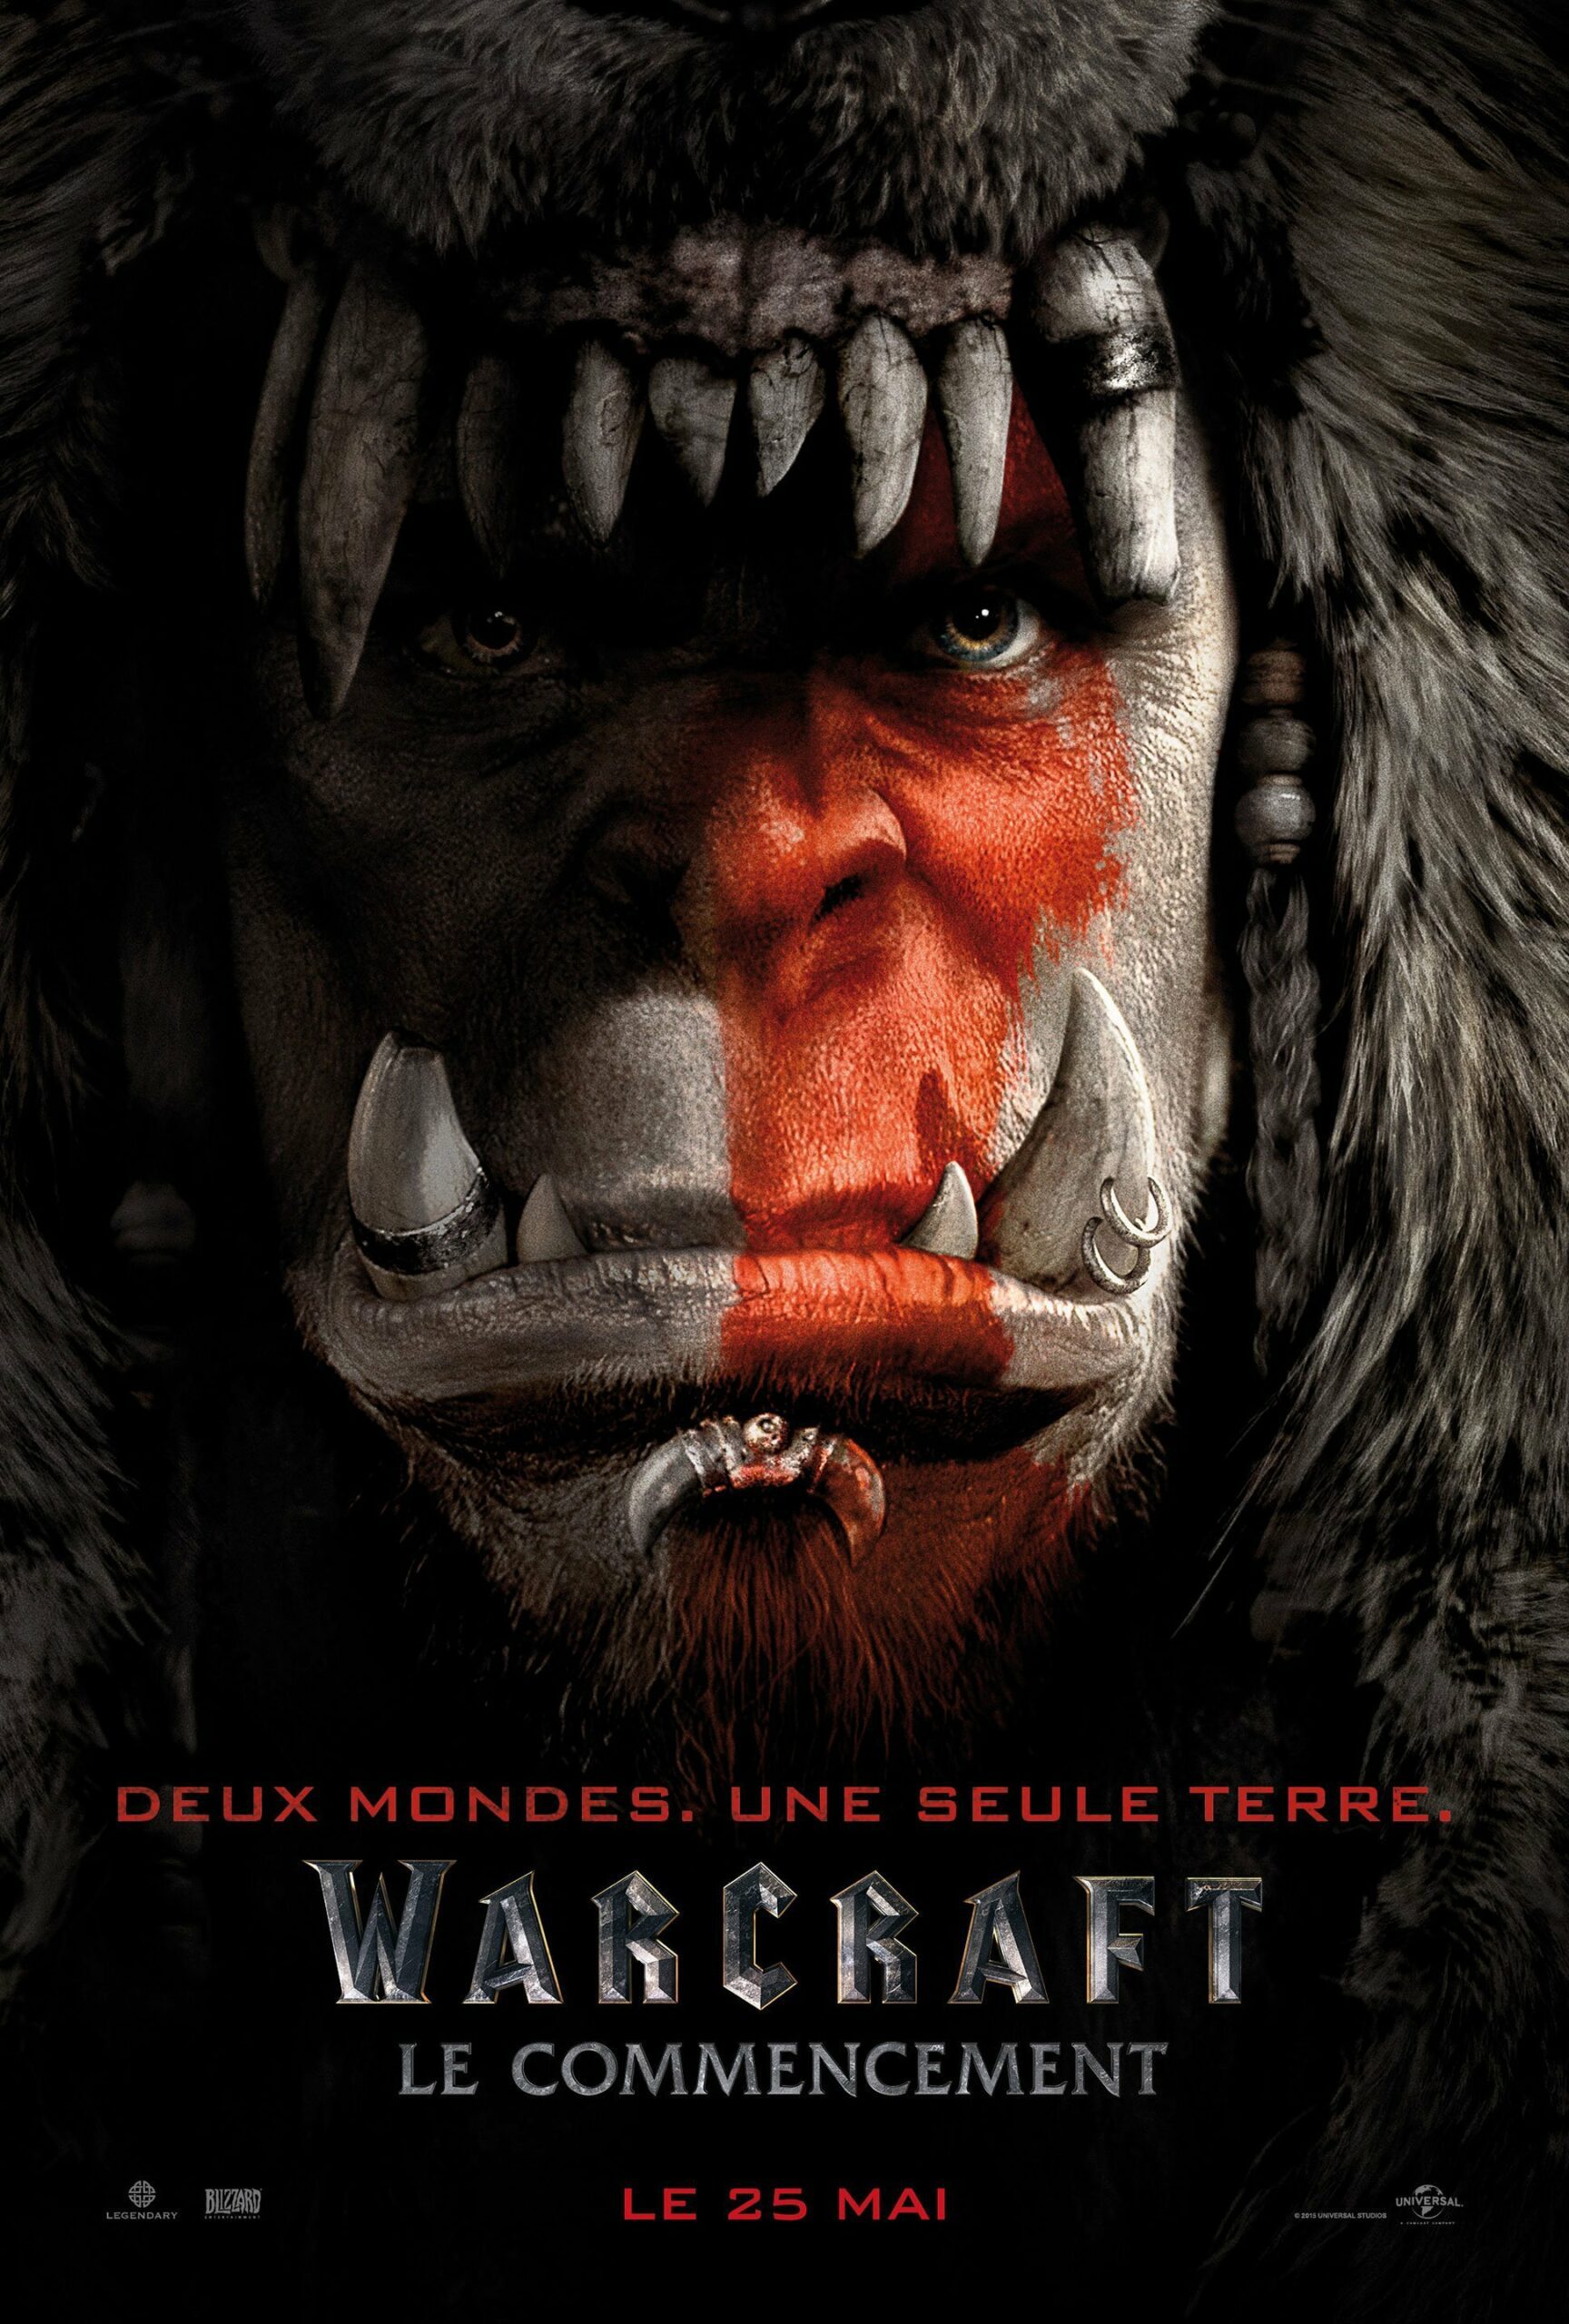 Affiche du film Warcraft: Le Commencement avec les Orcs